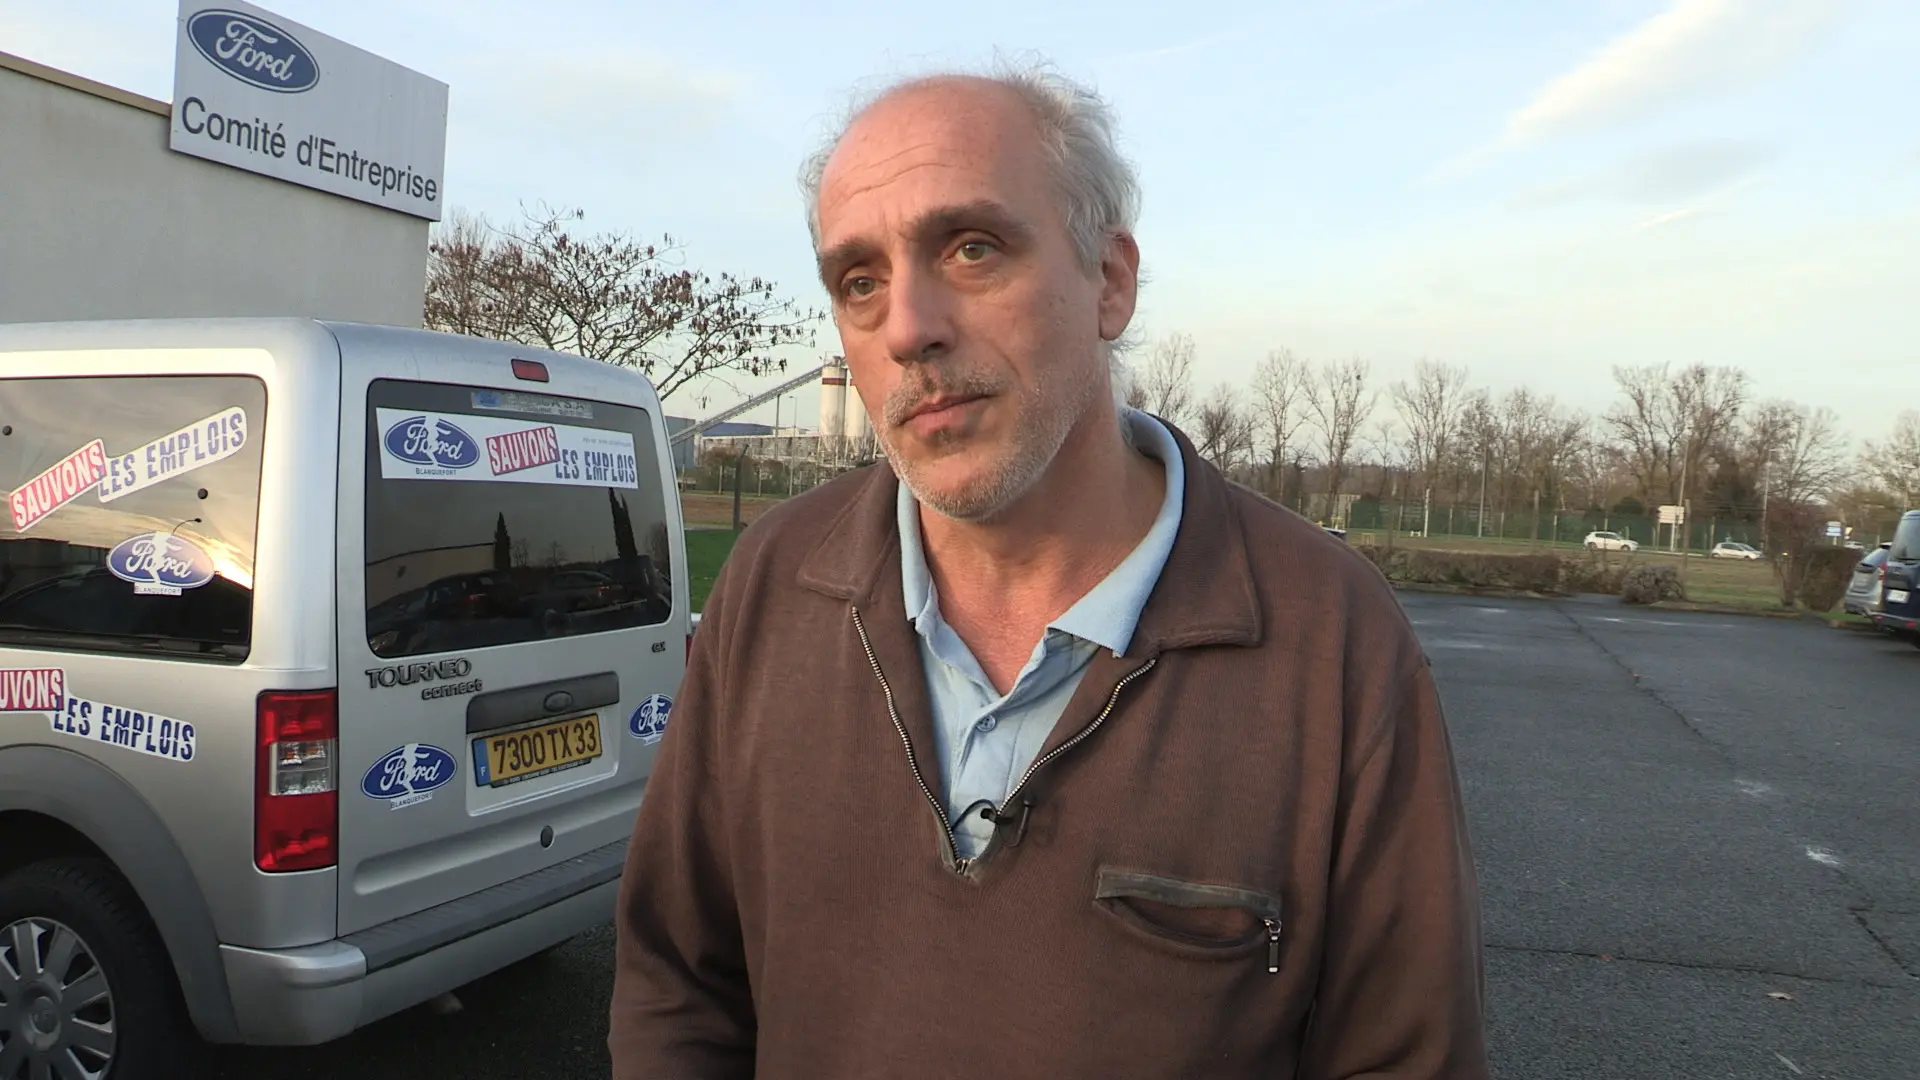 Vidéo : des centaines d’emplois menacés à Blanquefort